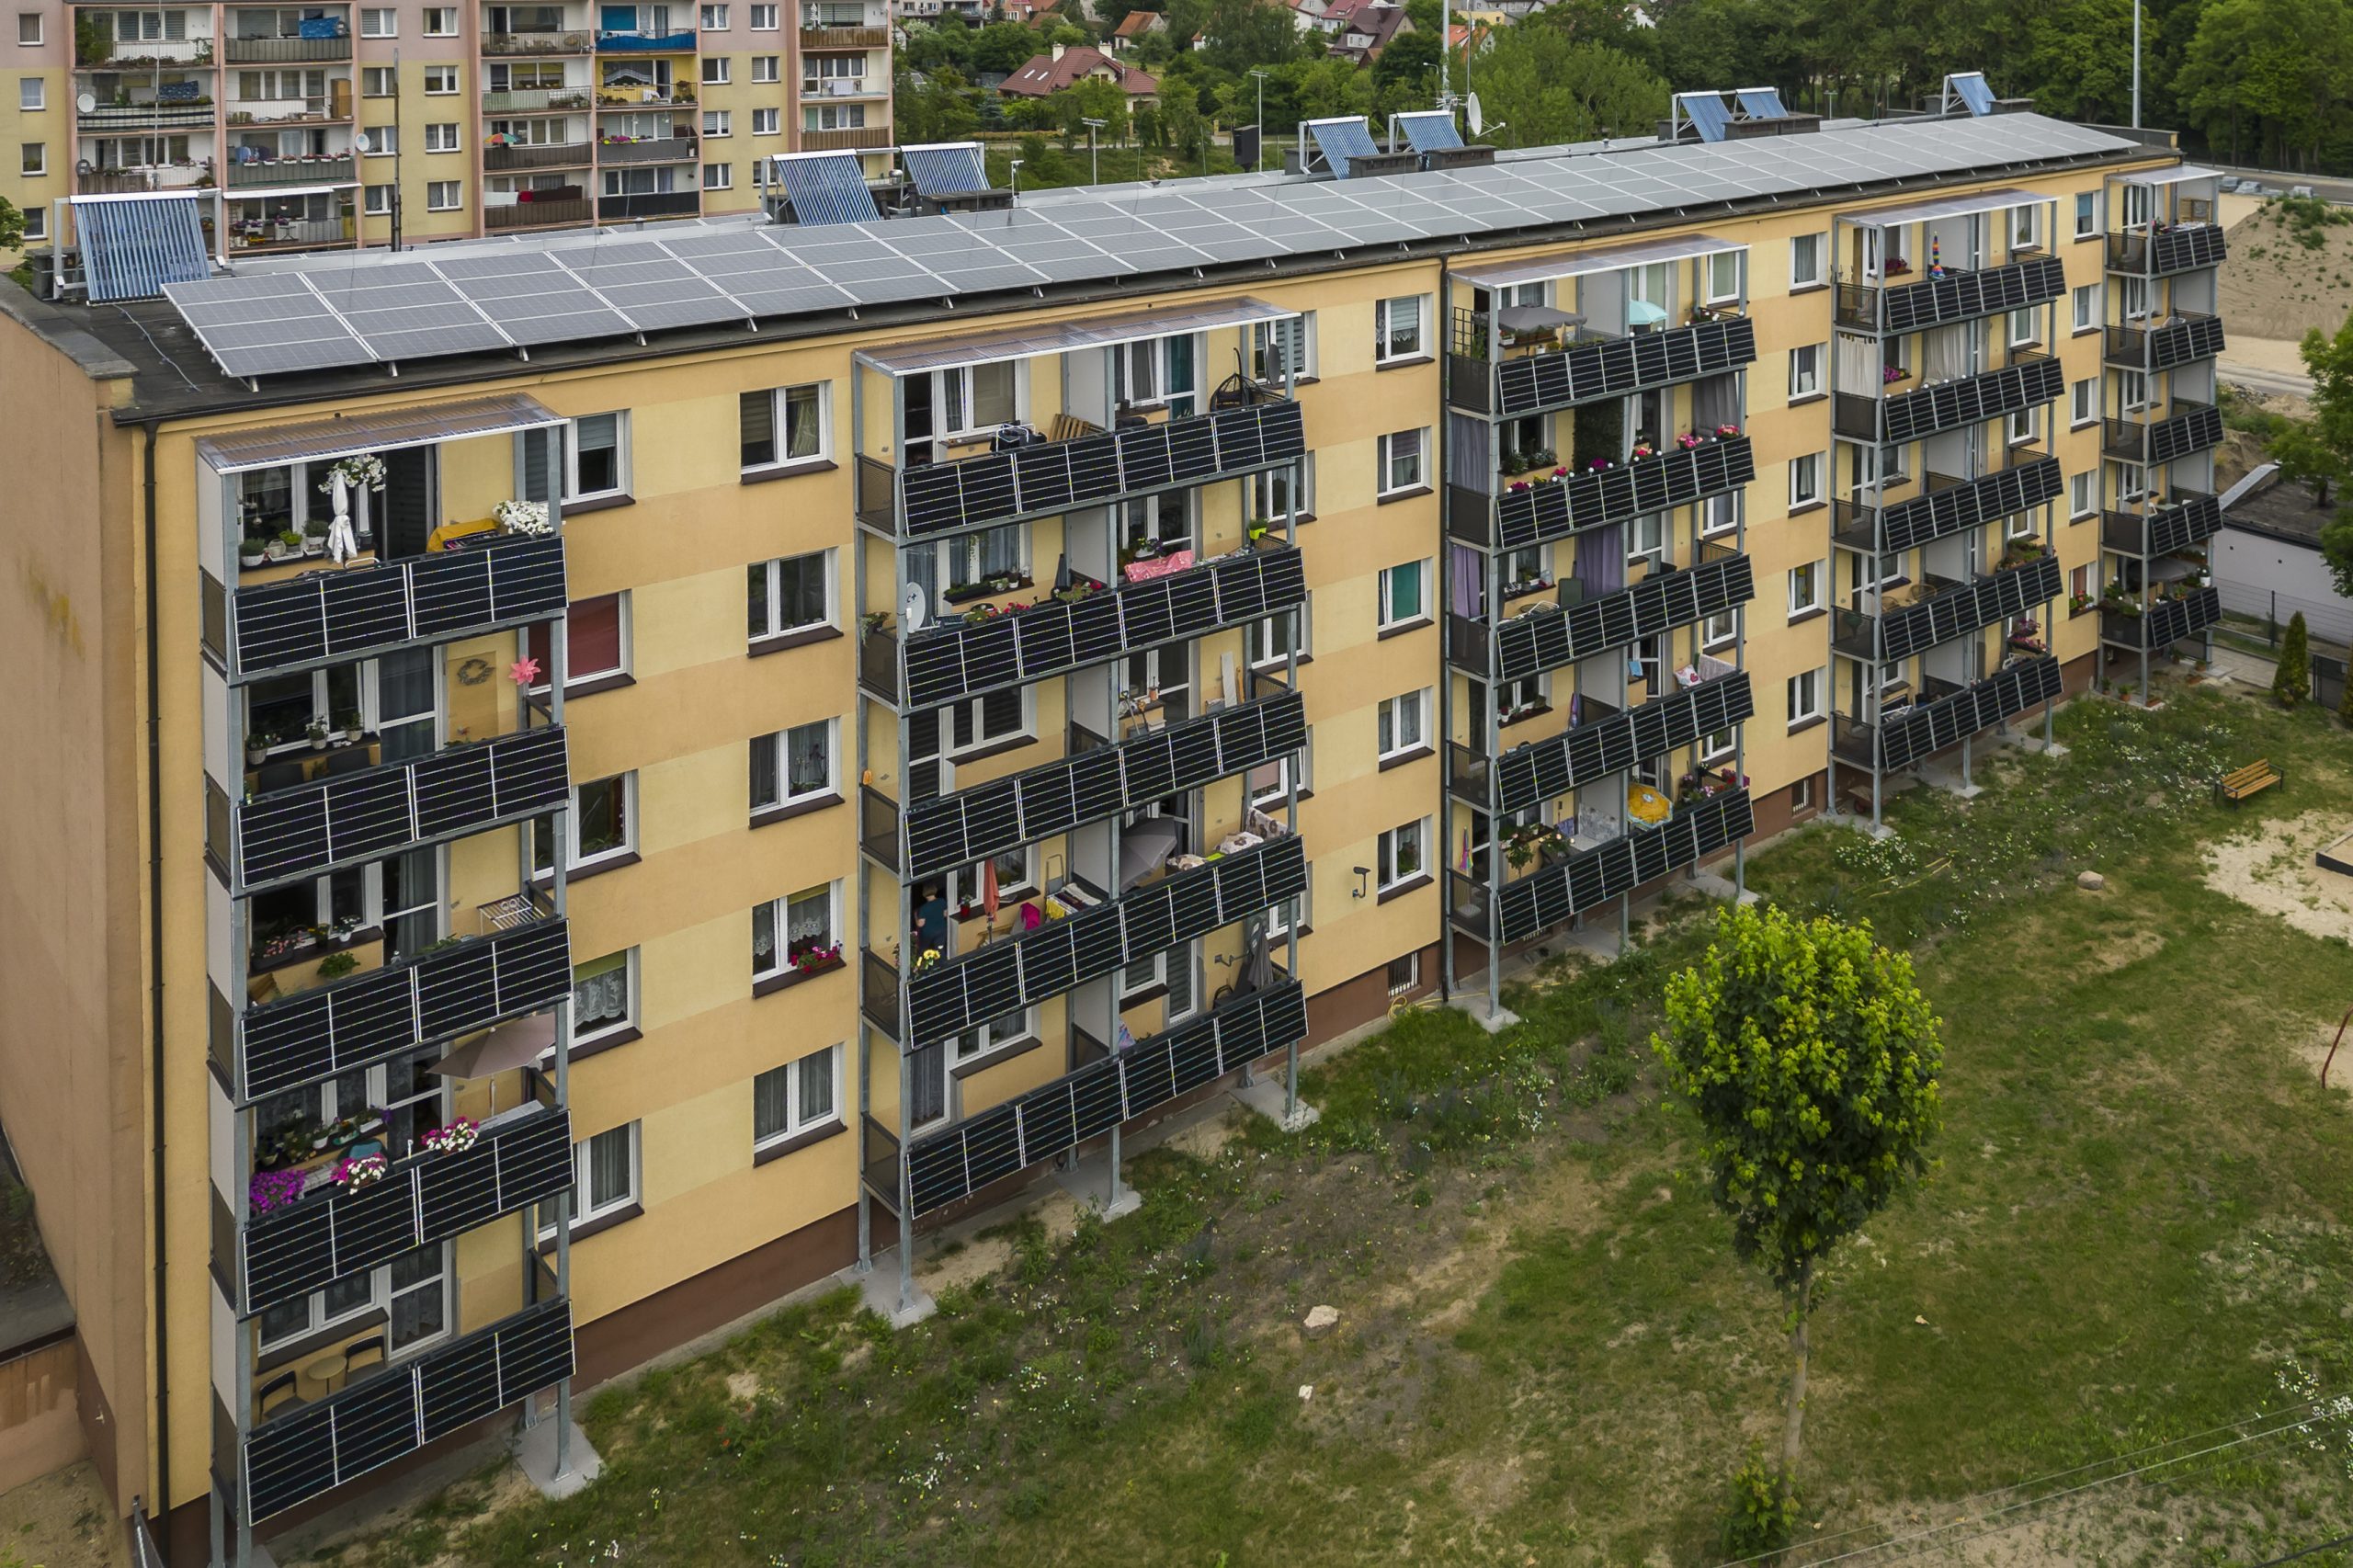 Szczytno, Polonia - Un'unità abitativa di epoca sovietica che è stata rigenerata con pannelli fotovoltaici su balconi e tetto e un sistema di pompe di calore. ©Bruno Zanzottera/Parallelozero